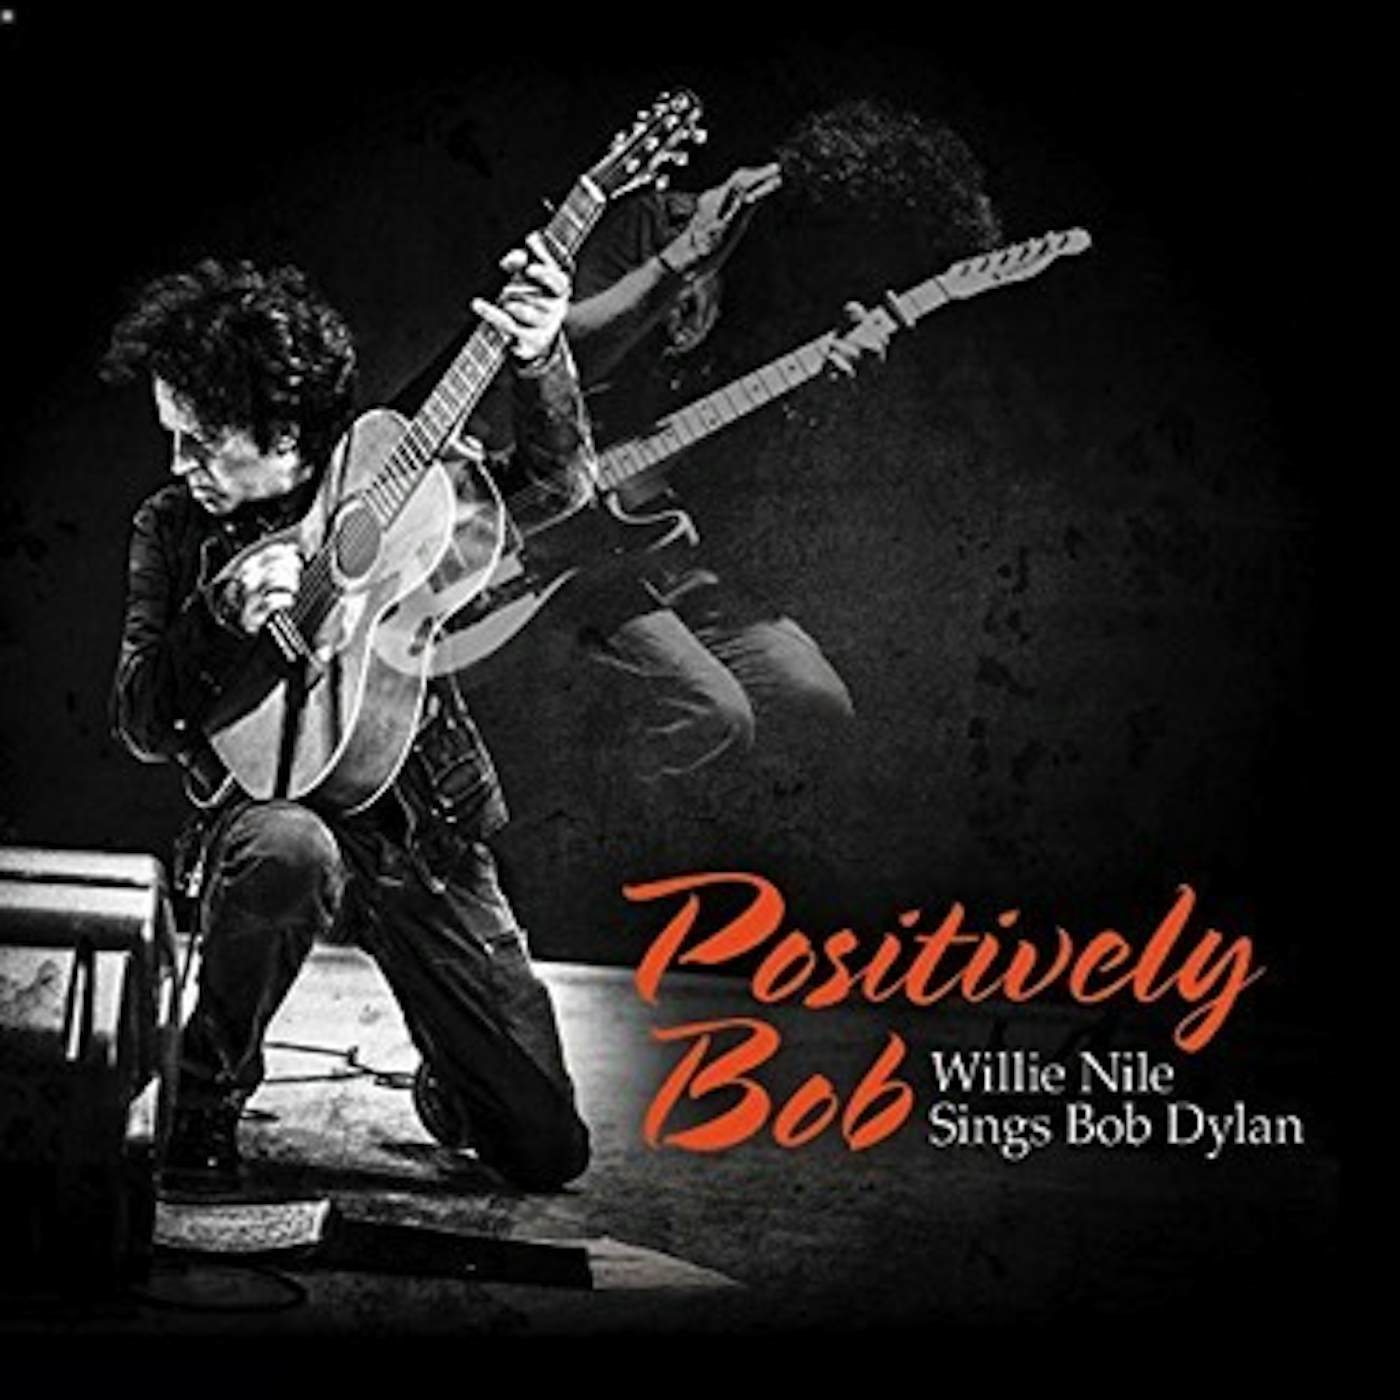 Positively Bob: Willie Nile Sings Bob Dylan CD